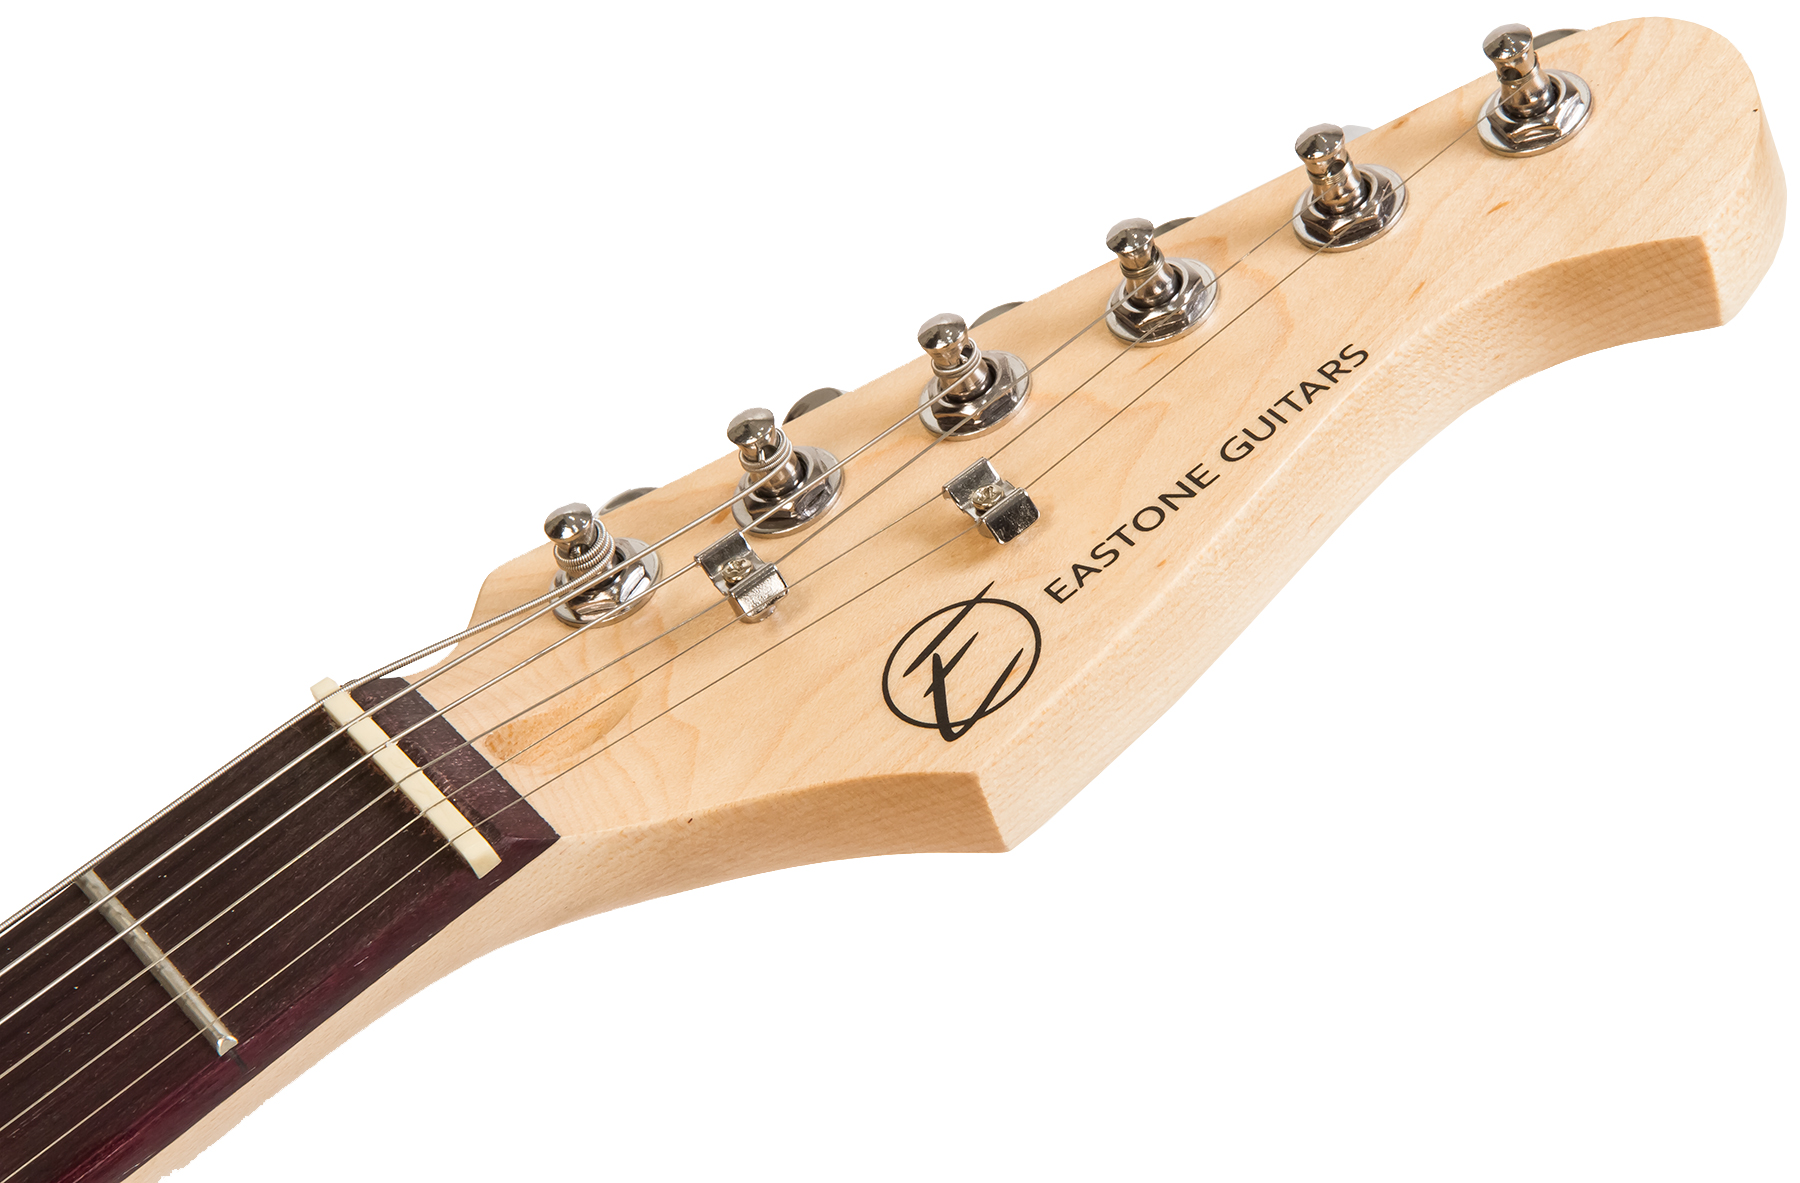 Eastone Str70t 3ts Lh Gaucher Sss Trem Pur - Sunburst - Guitarra electrica para zurdos - Variation 3